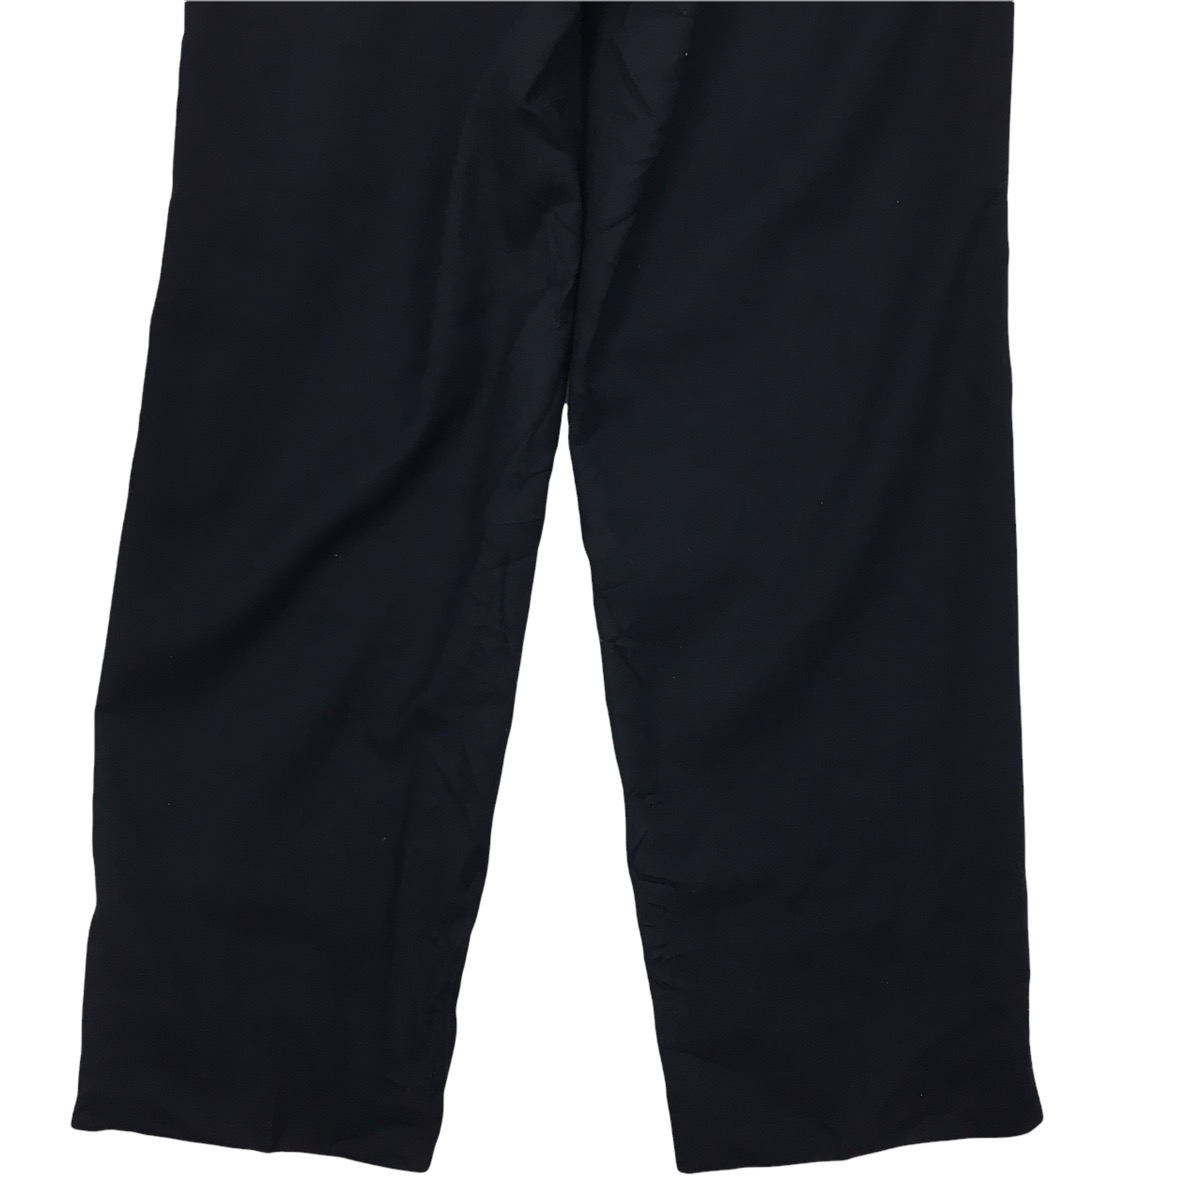 LANVIN CLASSIQUE Stretch Waist Long Pants Trousers Formal - 6